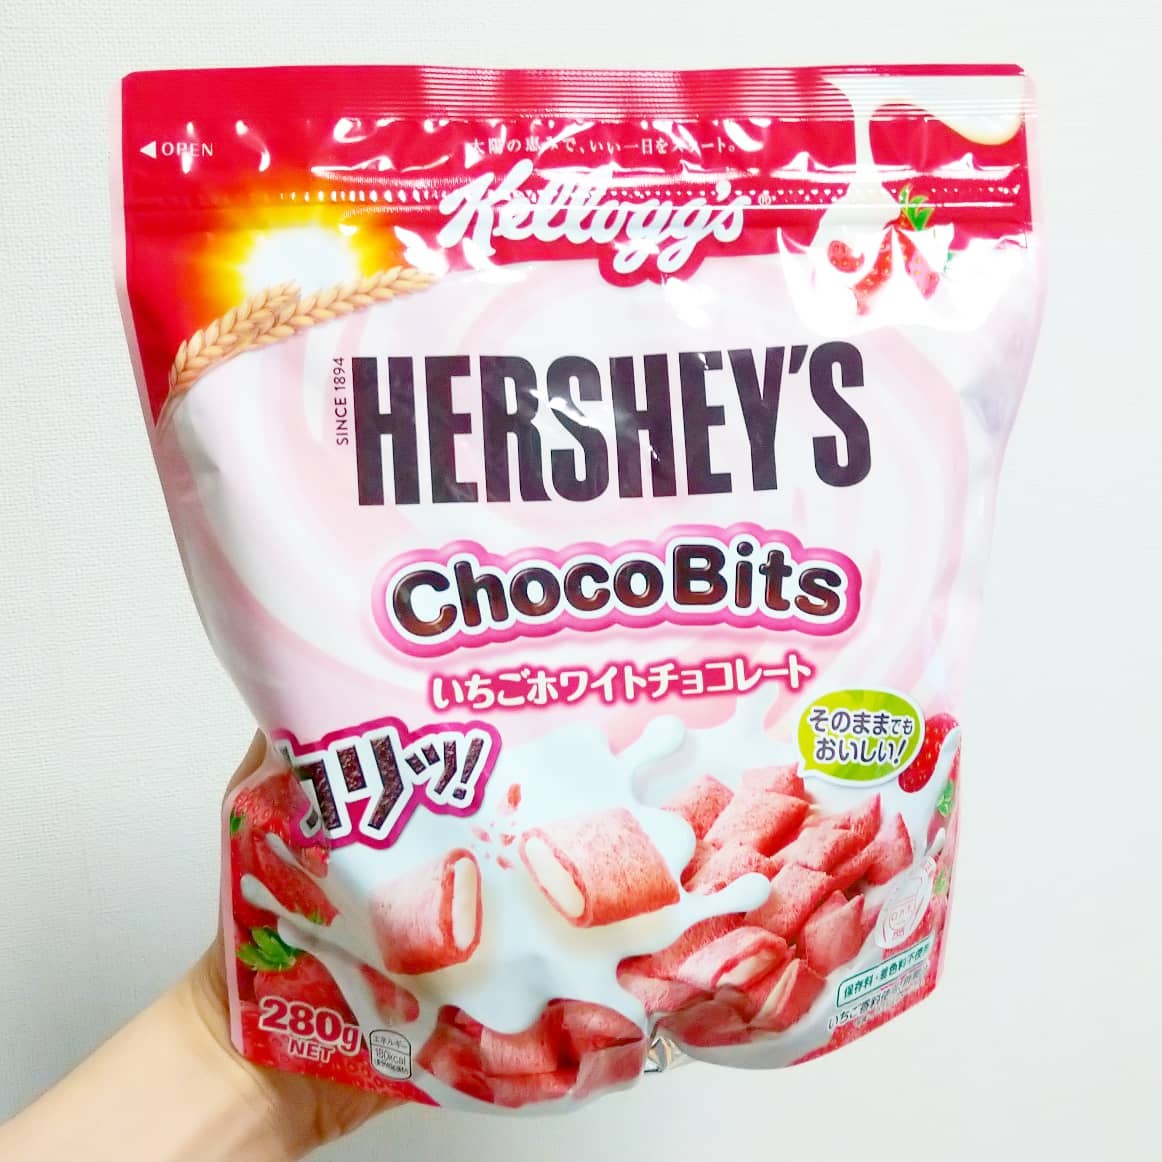 #いちごミルクラブ#日本ケロッグ #チョコビッツいちごホワイトチョコレート 謎イチゴ系－－☆－－本物イチゴ系甘さ強め系－－－☆－控え目系こってり系－－－☆－さっぱり系超ミルク系－－☆－－生クリーム系おもいで度－－☆－－ #侍猫度袋開けたらほんのり苺かおるピンクの生地の中にホワイトチョコが入ったやつ。苺感は控えめだね。生地は水分持ってく系だから牛乳かけたほうが好きかな。ホワイトチョコはわりと甘さ控えめだね。対牛乳へのプロテクトが強めだから最後までカリカリでいけるね。#いちごオレ #いちごオレ味 #いちごミルク #いちごミルクみたい #いちご牛乳 #いちご牛乳味 #イチゴ牛乳 #いちご牛乳クラブ #苺牛乳 #苺牛乳が好き #苺ミルク #苺スイーツ #苺 #苺好きに生まれたからには #メソギア派 #糖分 #いちごミルク味 #スイーツ #スイーツ好き #スイーツスタグラム #スイーツタイム #スイーツ写真 #strawberry #strawberrymilk